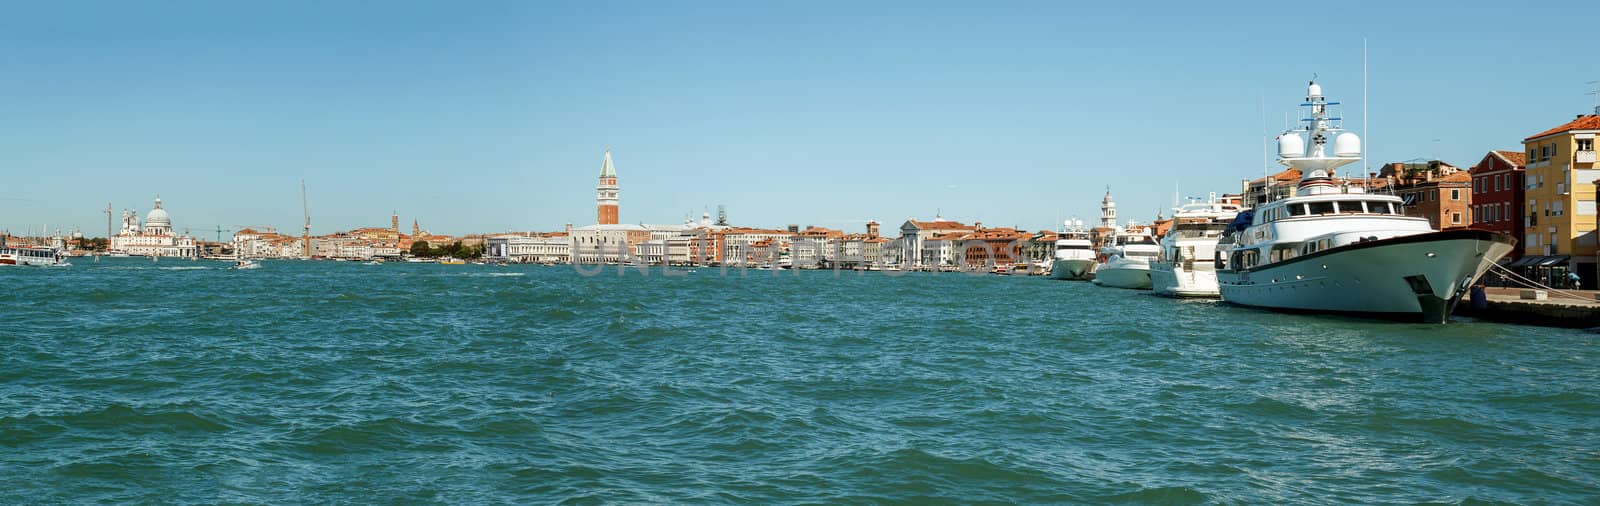 Panorama of Venice  Italy  by artush